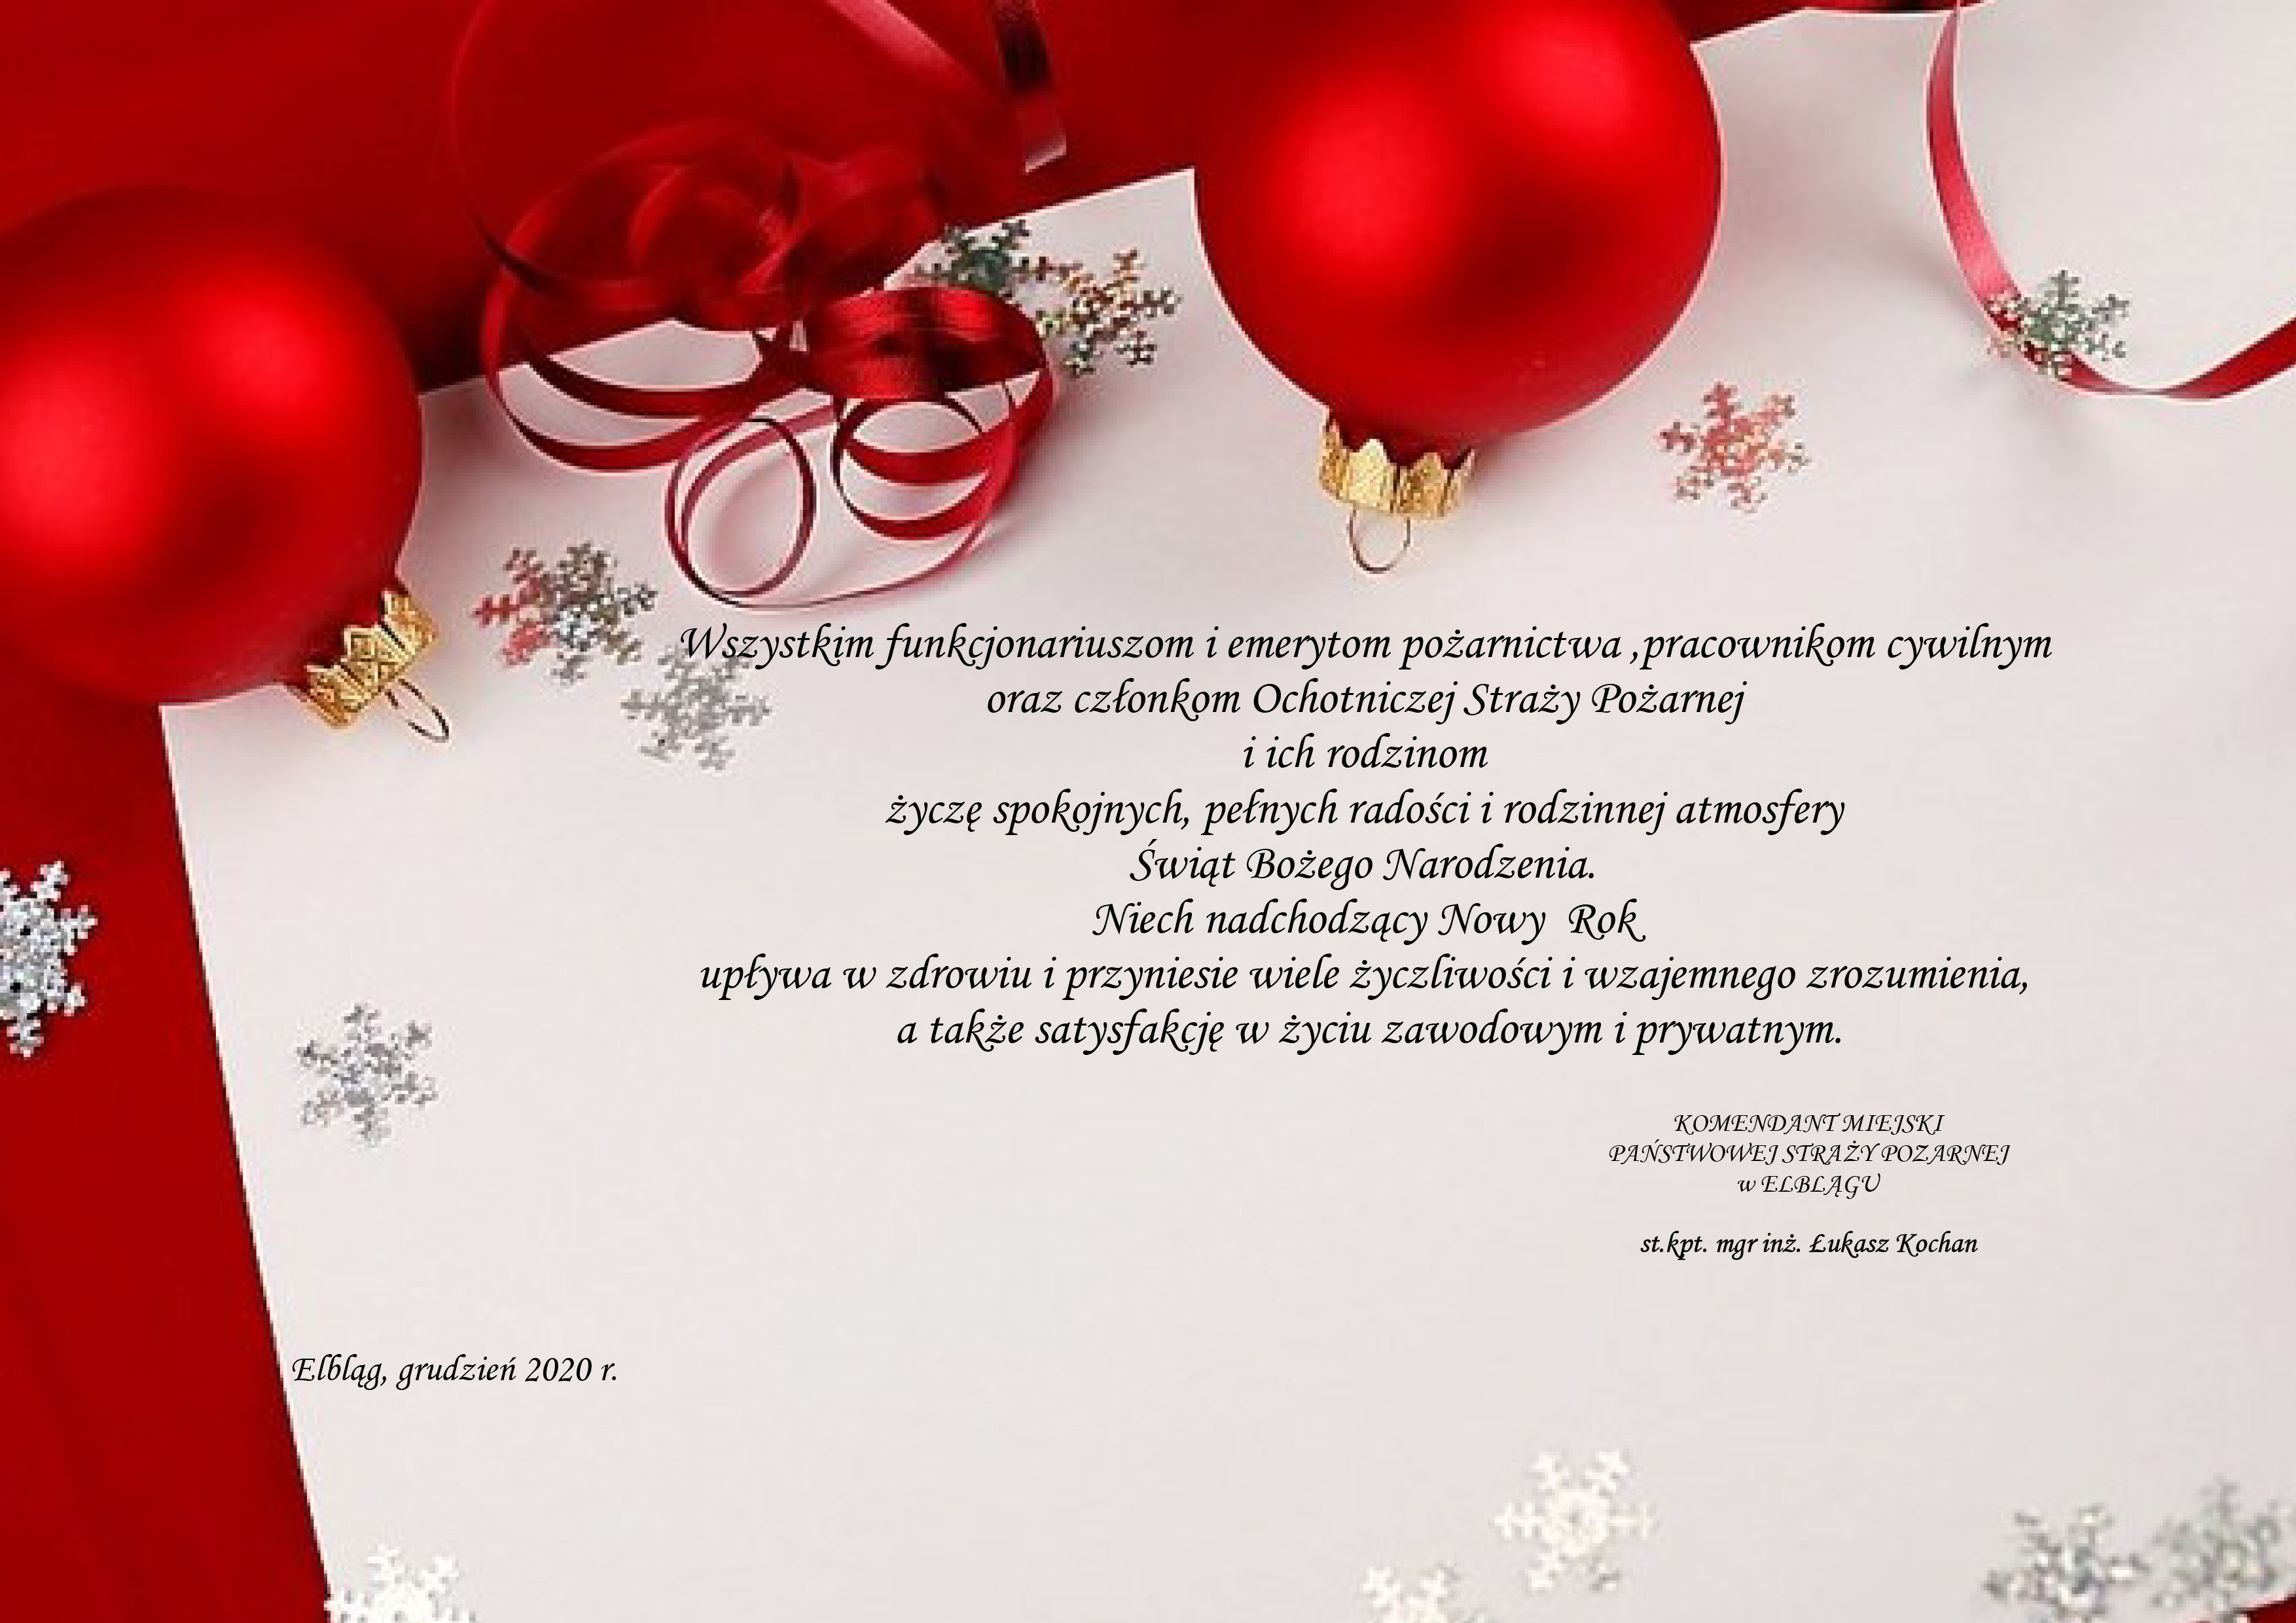  Życzenia świąteczno - noworoczne Komendanta Miejskiego PSP w Elblągu